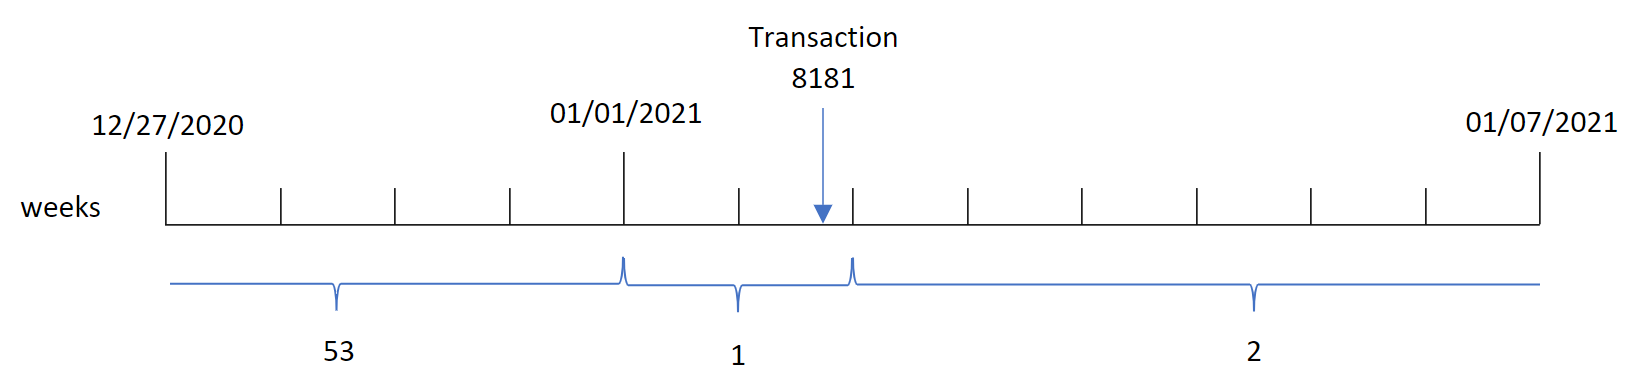 weekyear() 関数が、トランザクション 8181 が第 1 週に発生したことを特定し、その週の年である 2021 を返すことを示す図。